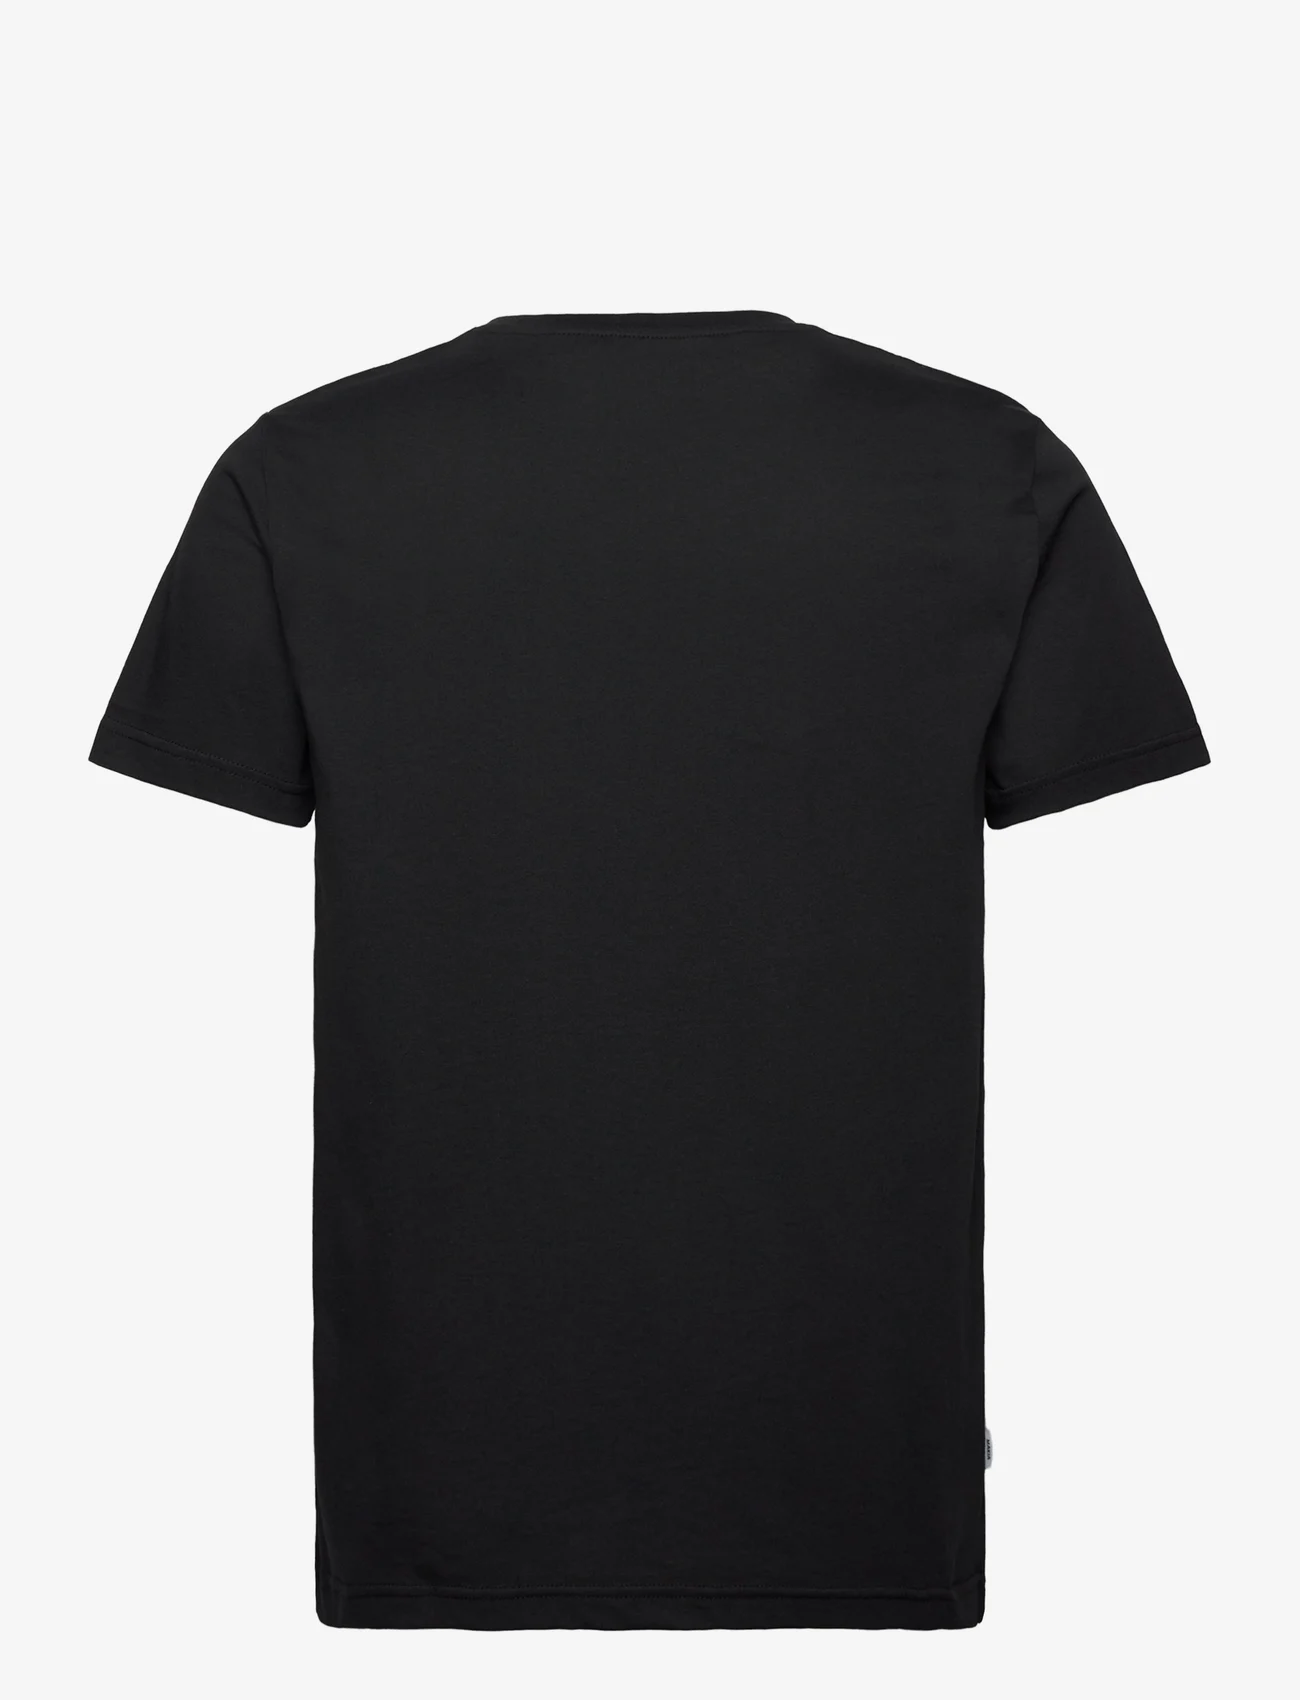 Makia - Sextant t-shirt - die niedrigsten preise - black - 1